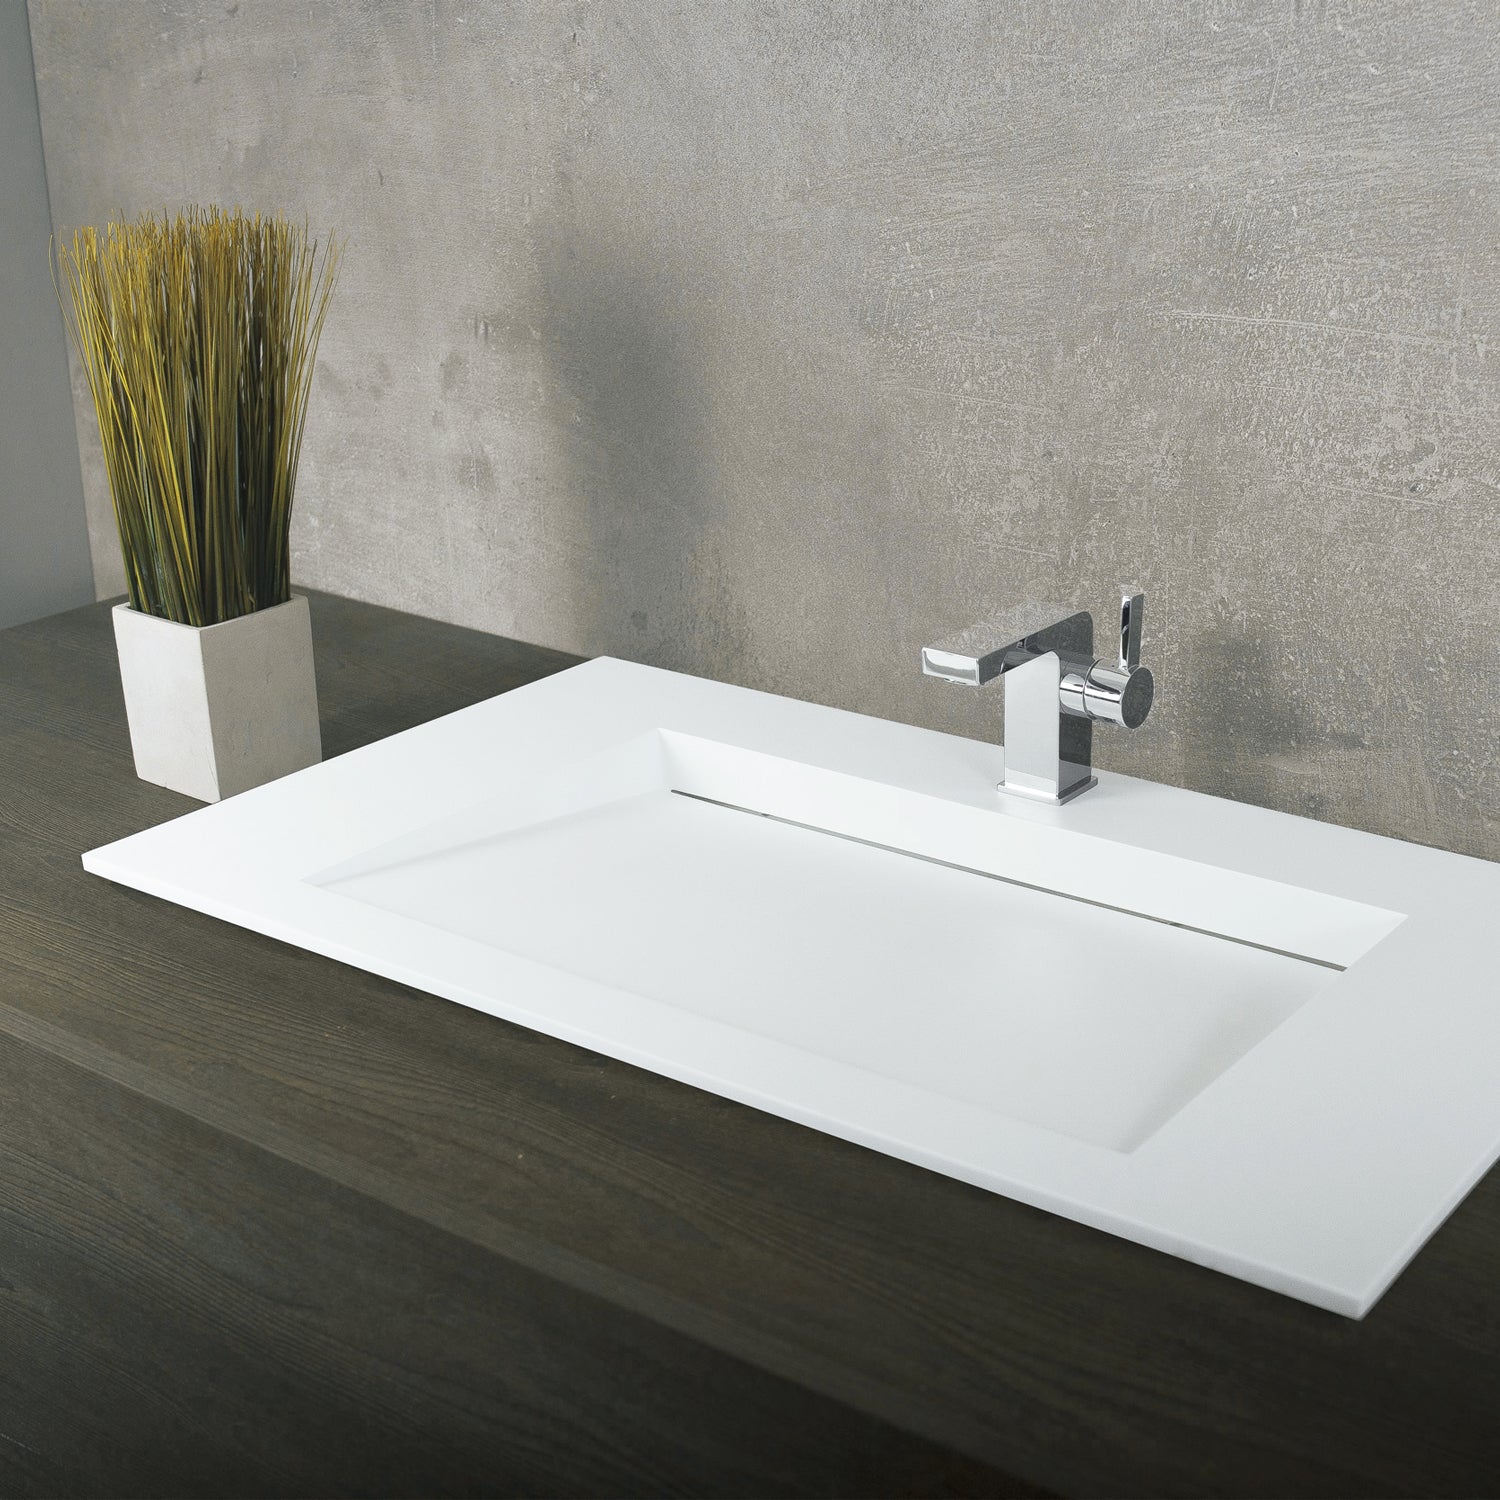 DAX Lavabo de baño rectangular de superficie sólida con montaje superior de un tazón, acabado blanco mate, 35-1/4 x 19-5/8 x 3-1/2 pulgadas (DAX-AB-1331)